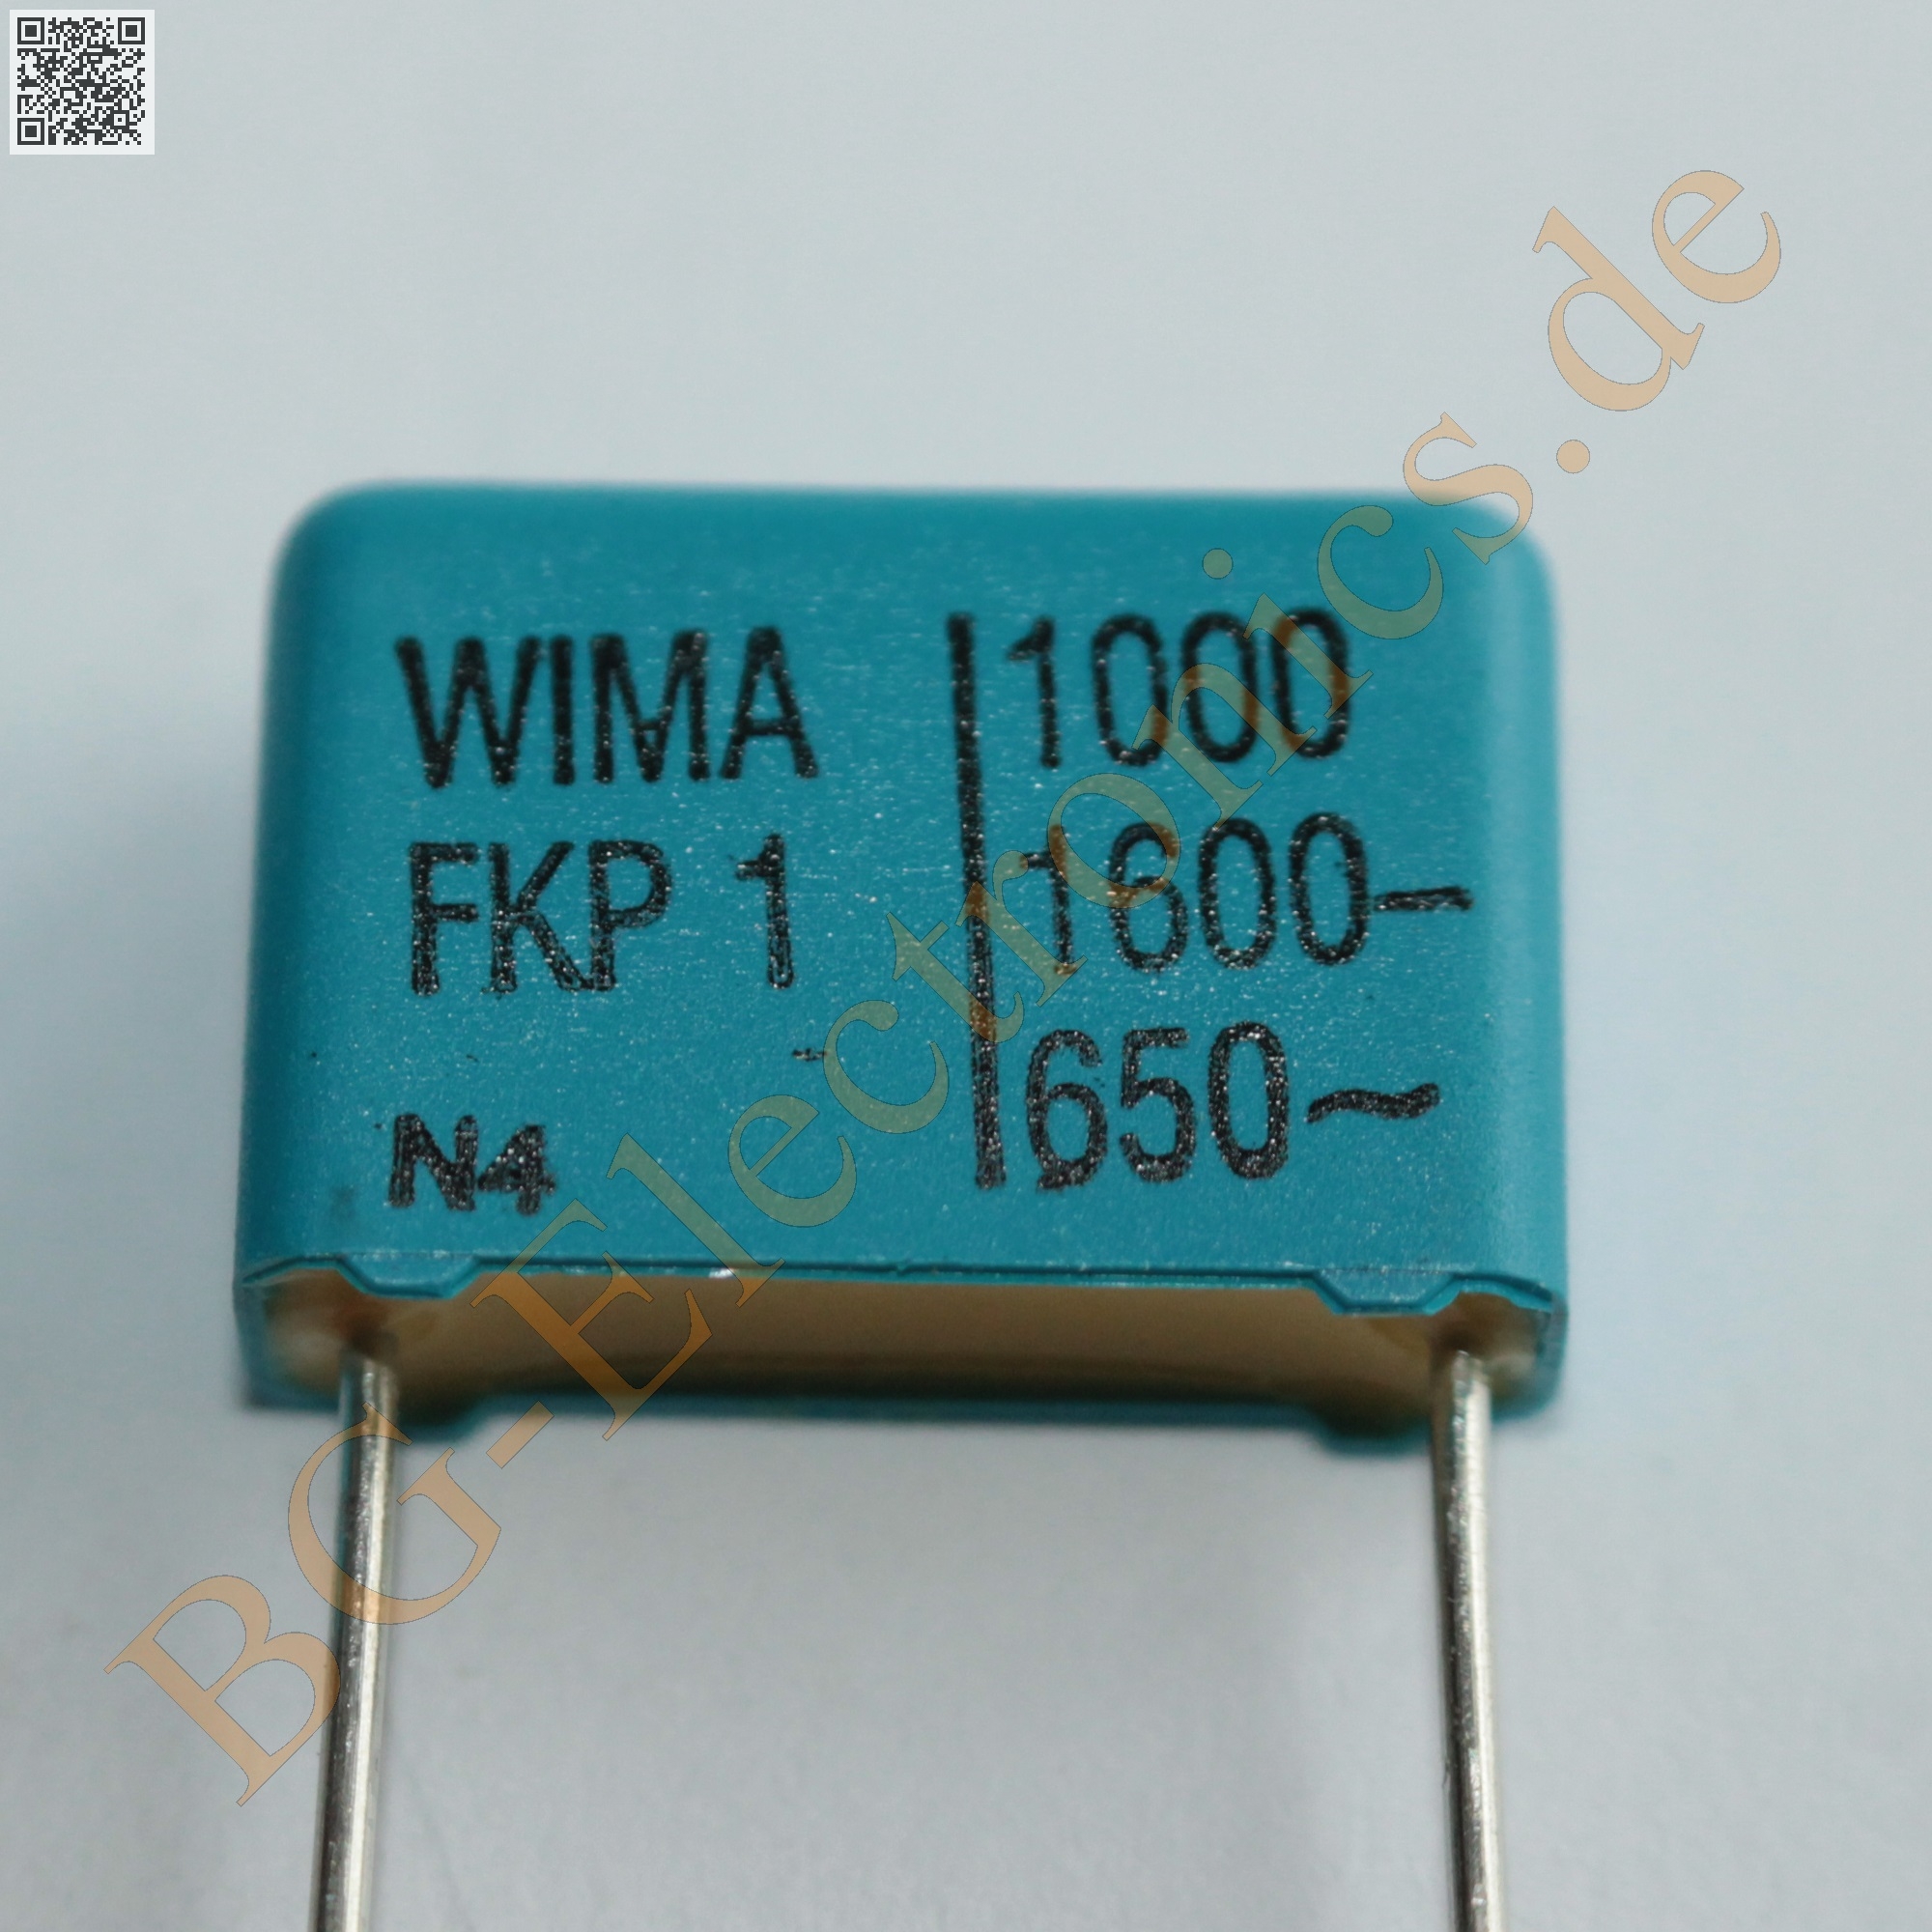 FO-R 1000pF / 1600V / FKP-1 / RM15